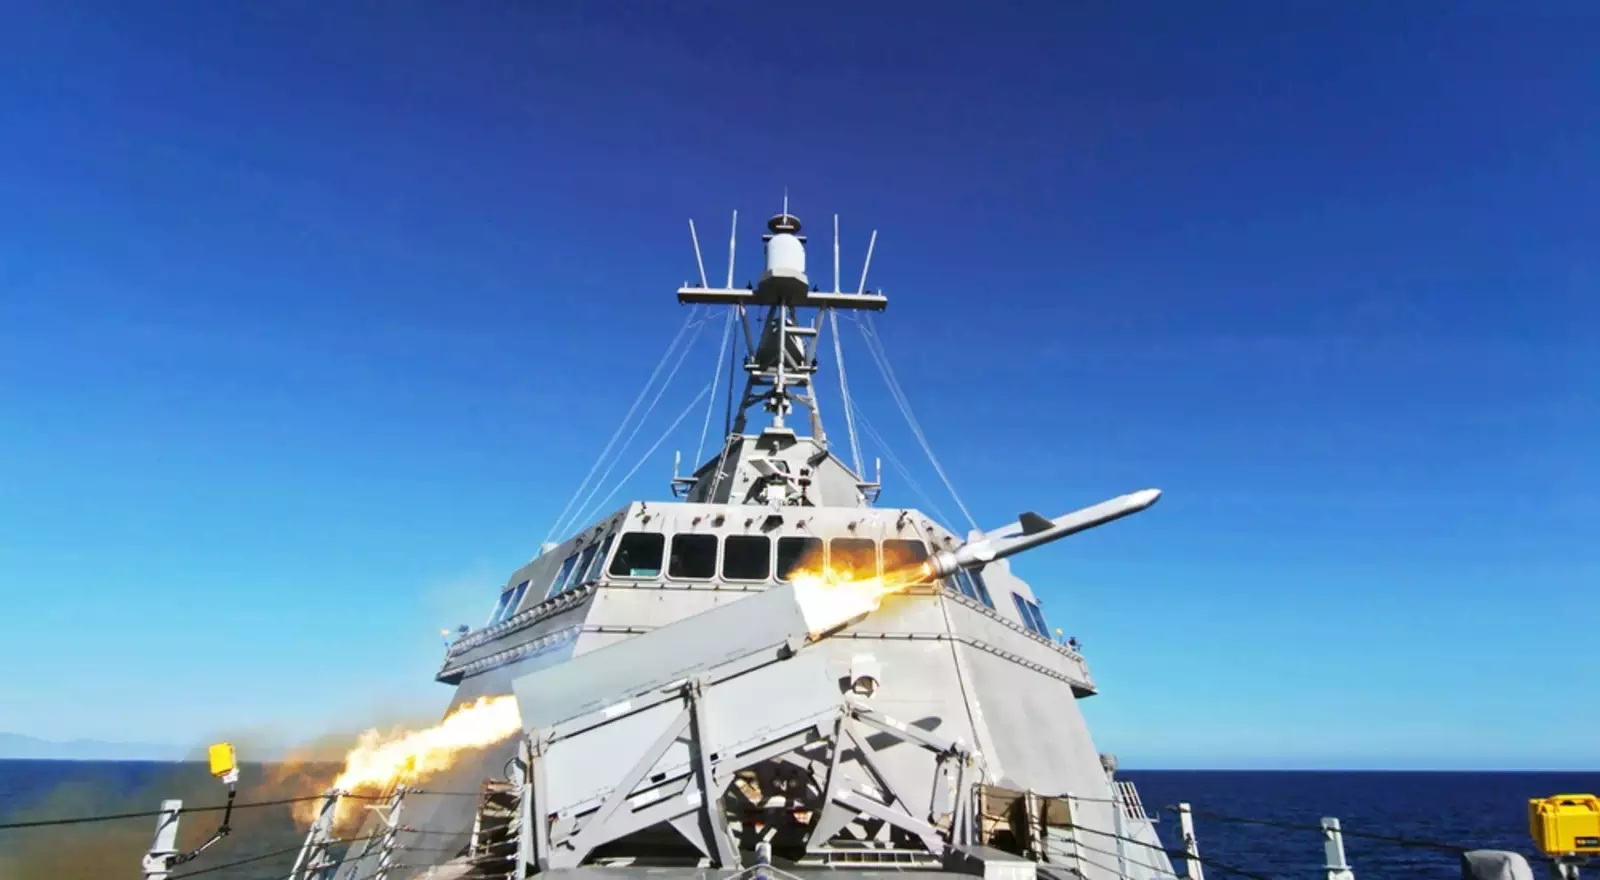 Пуск NSM с прибрежного боевого корабля USS Gabrielle Giffords (LCS 10) запускает военно-морскую ударную ракету в рамках эксплуатационных испытаний и оценки судна